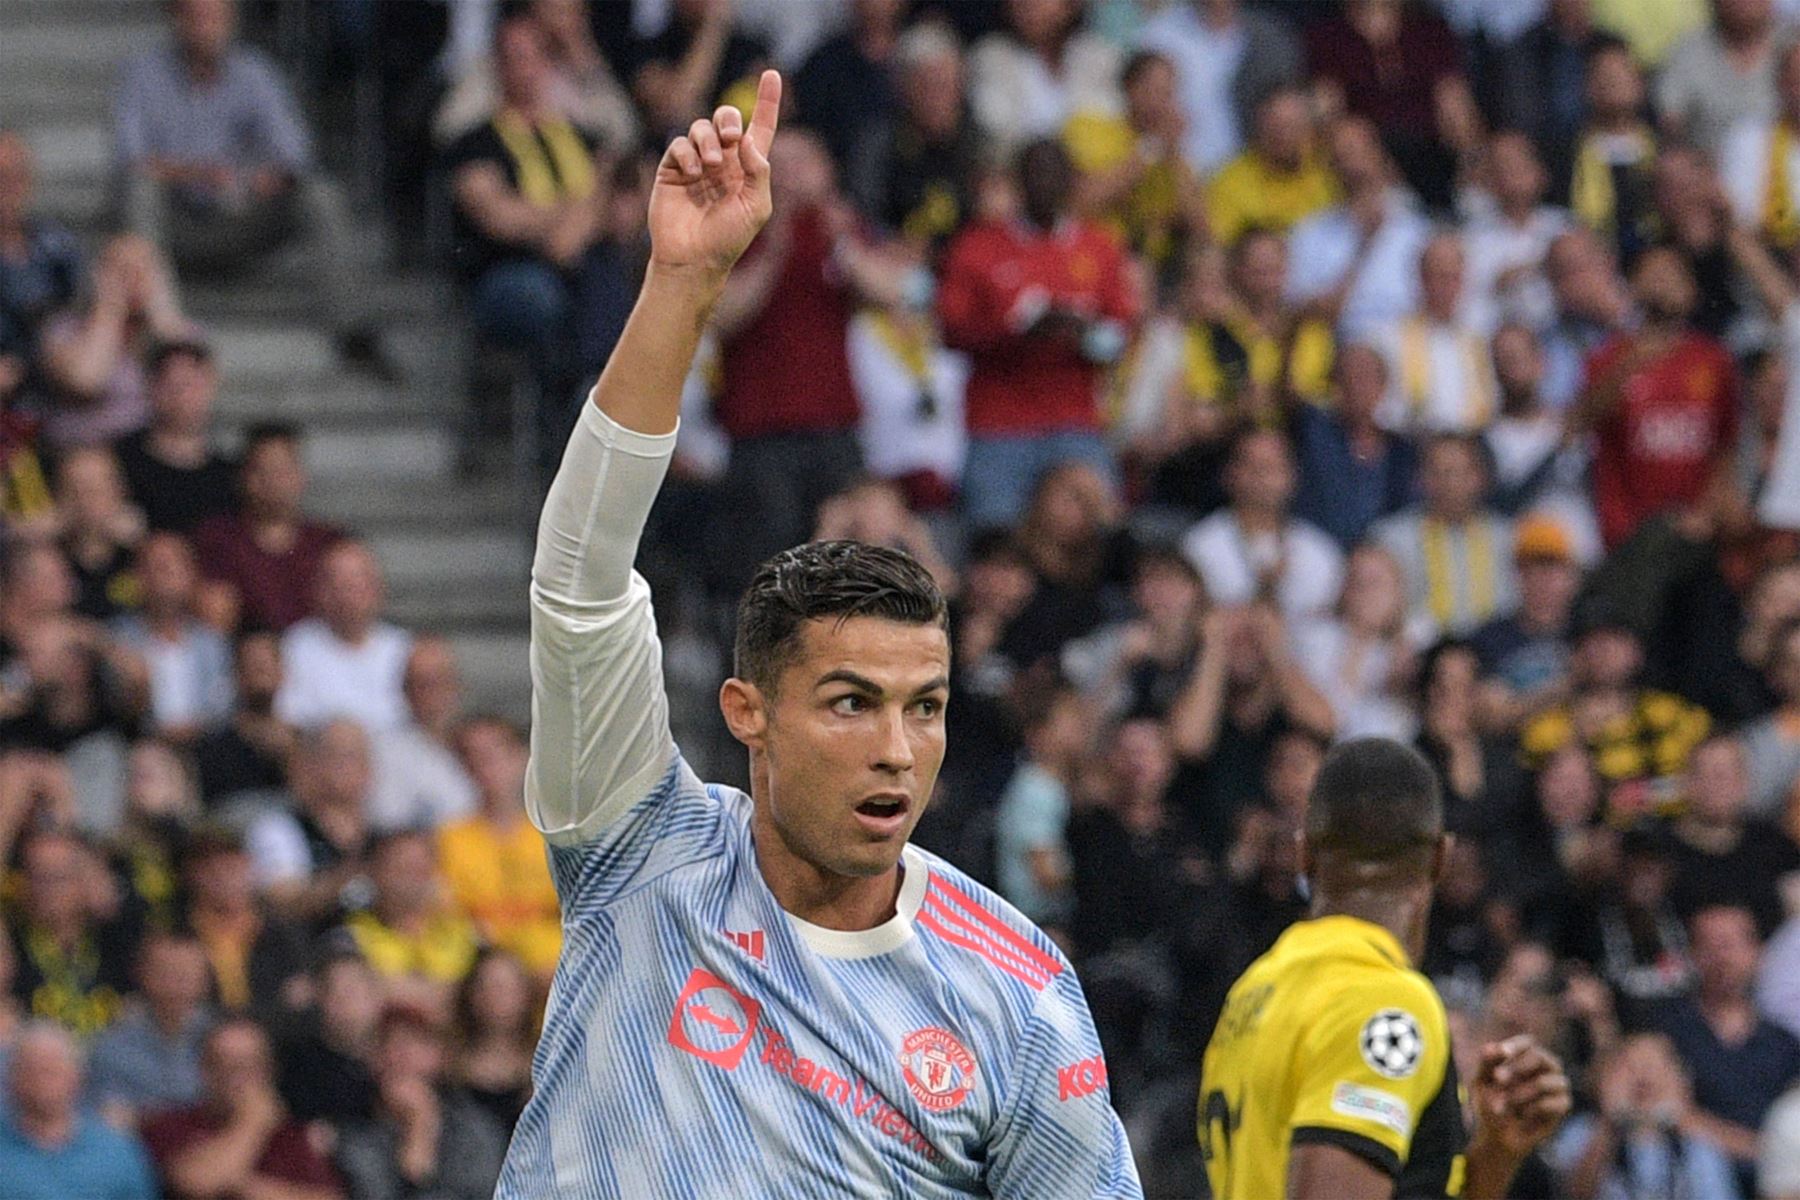 El delantero portugués del Manchester United, Cristiano Ronaldo, celebra tras marcar un gol durante el partido de fútbol del Grupo F de la Liga de Campeones de la UEFA entre el Young Boys y el Manchester United.
Foto: AFP